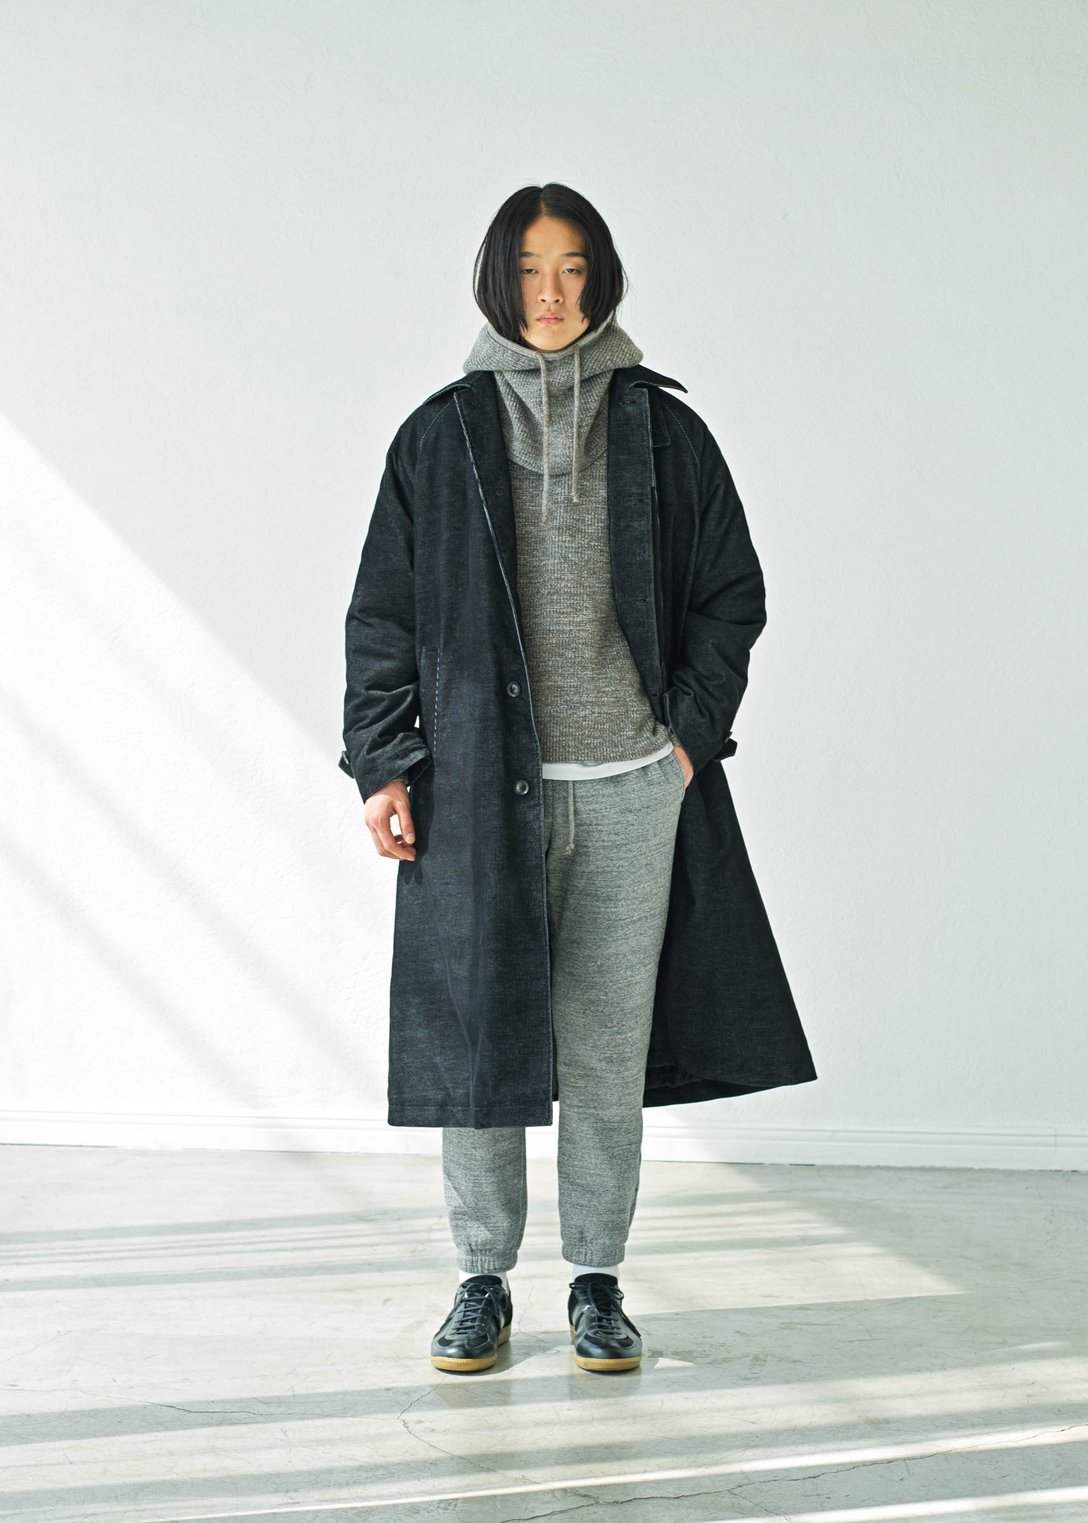 アトリエベトン のコートを着用する男性モデル